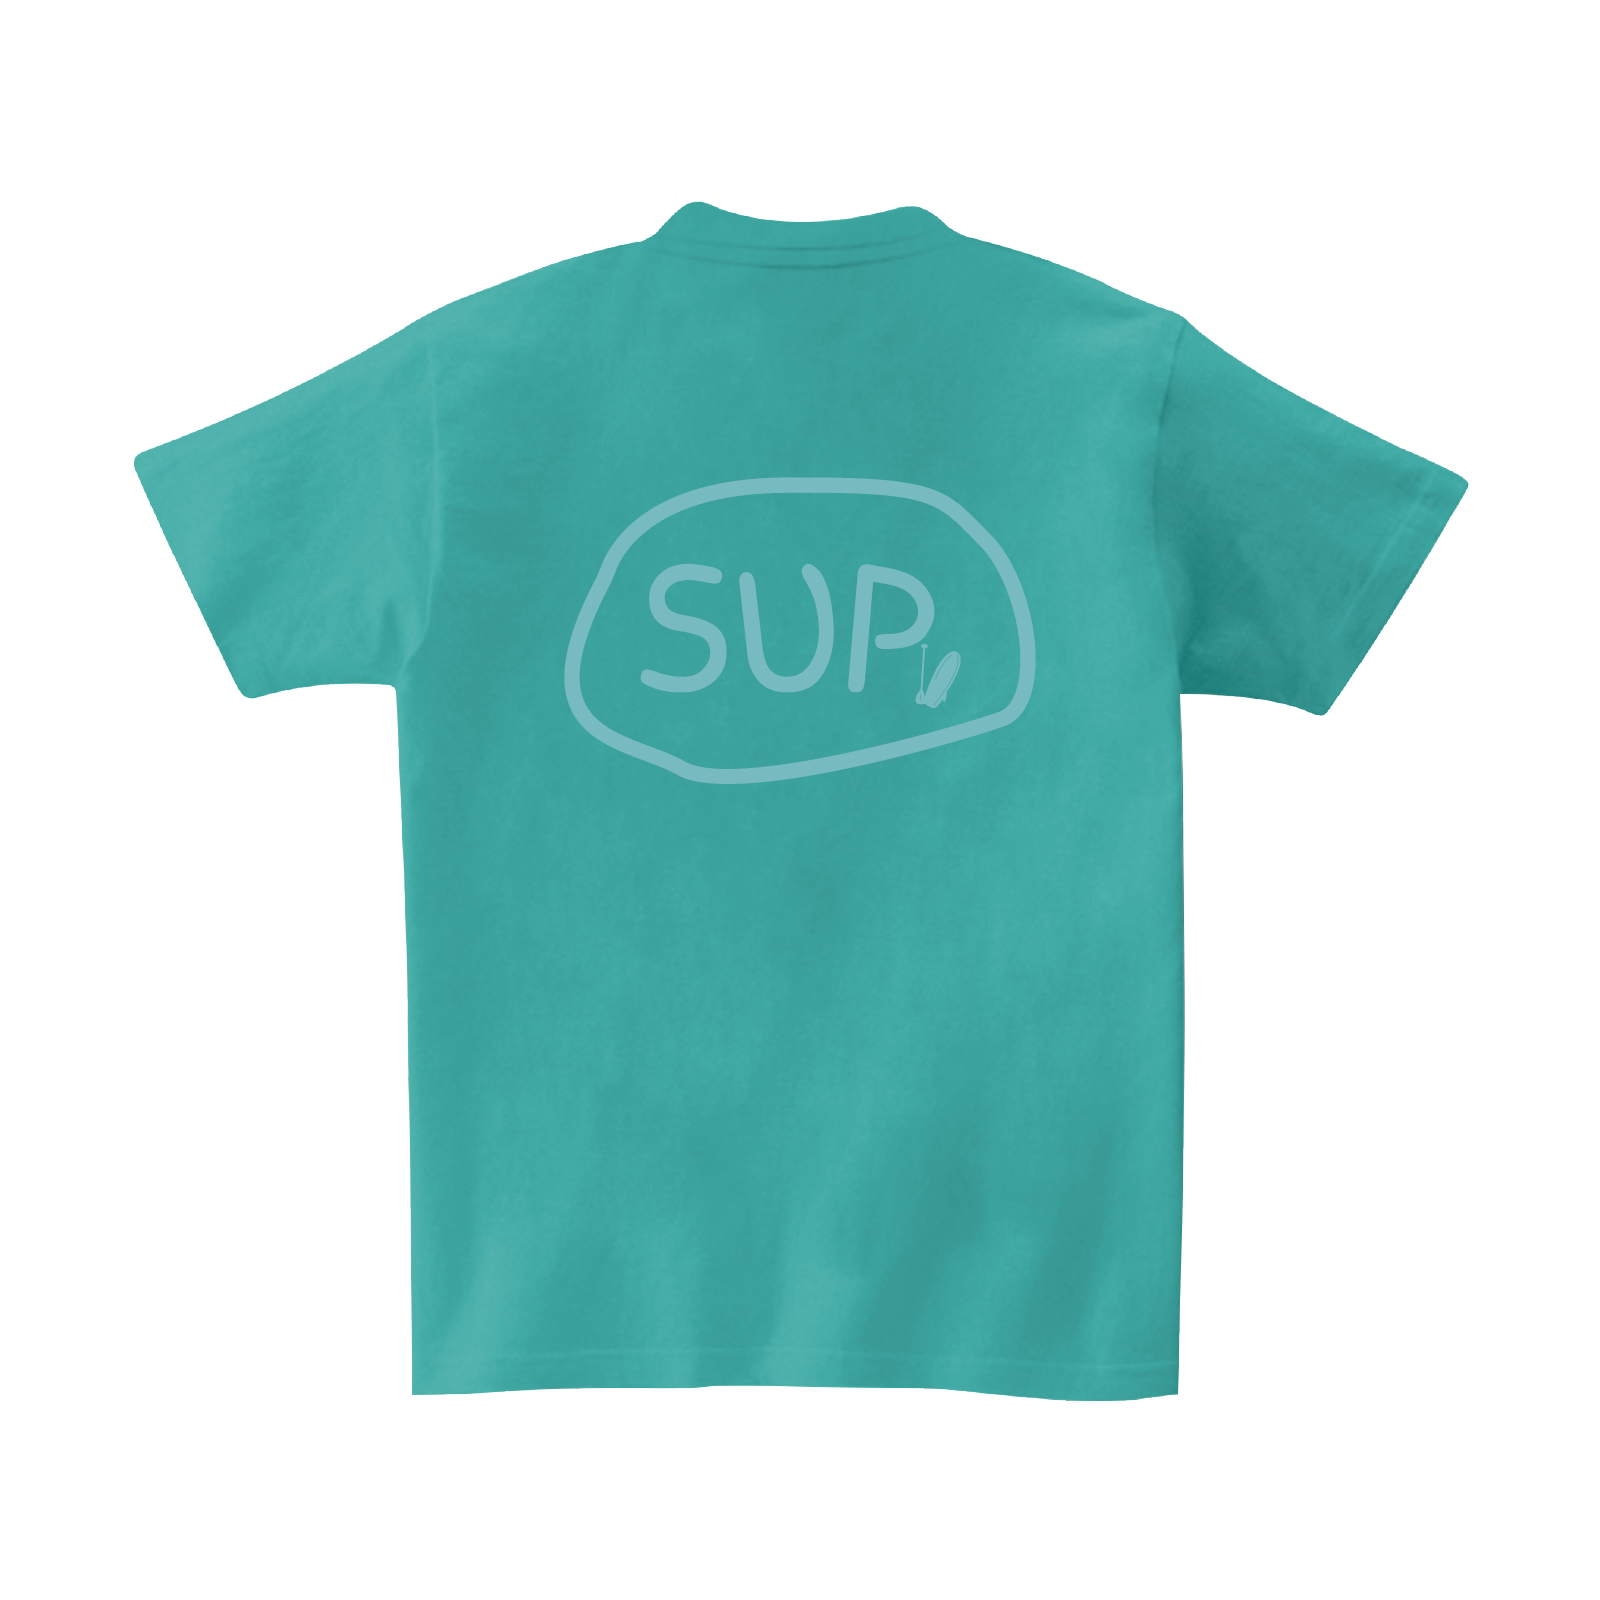 Aqua_Tshirt